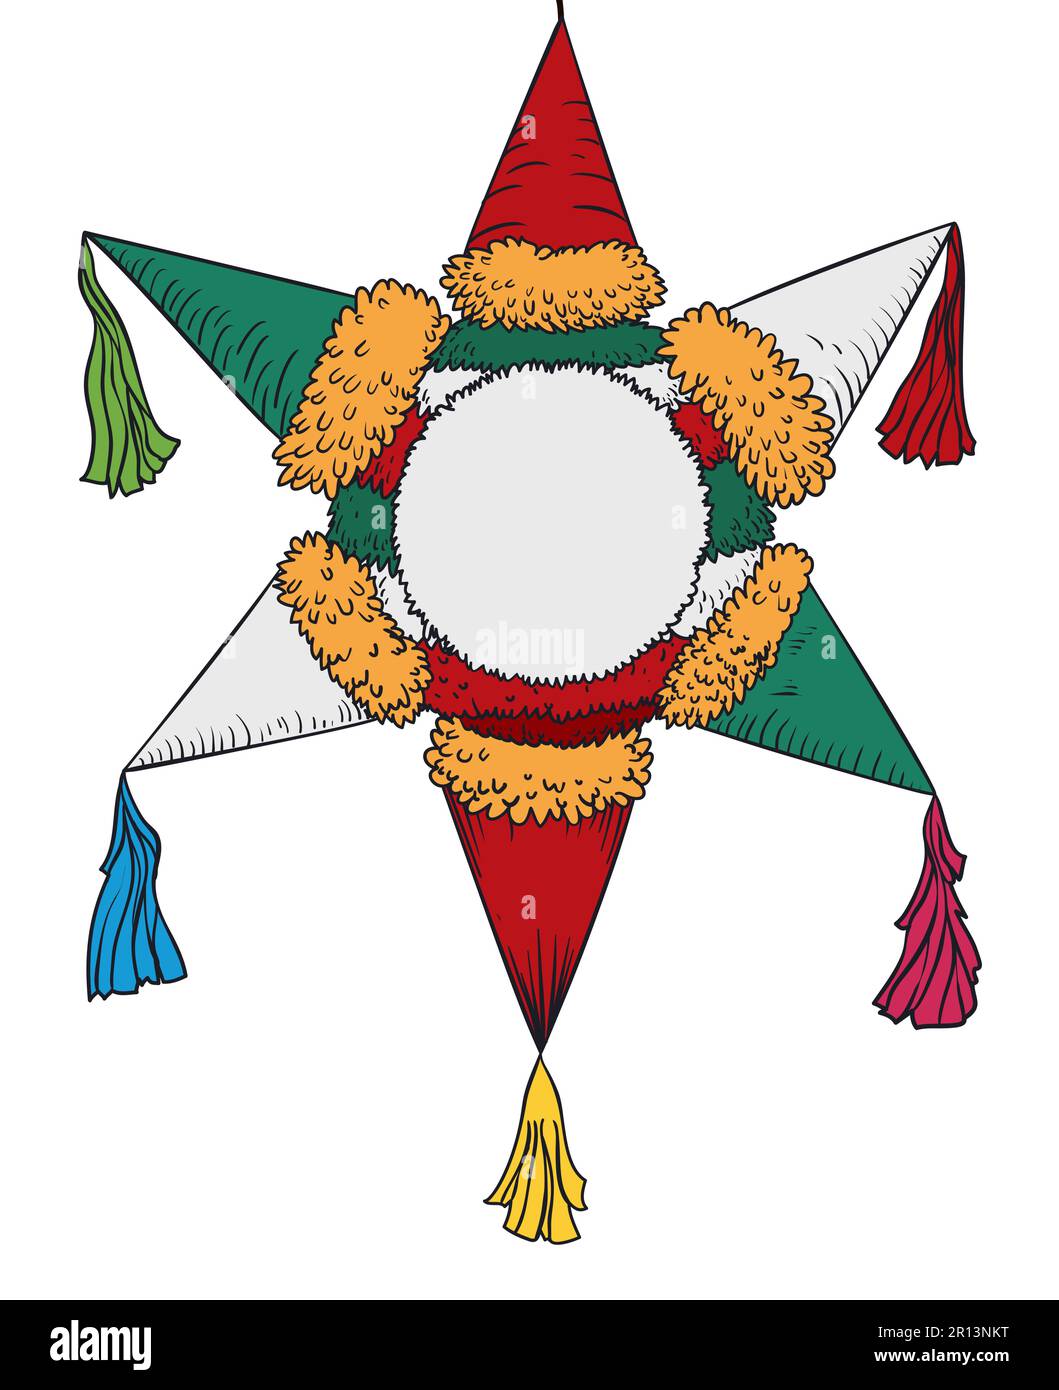 Isolierte Pinata mit traditioneller Sternform und mexikanischen Farben in handgemalten und flachen Farben. Stock Vektor